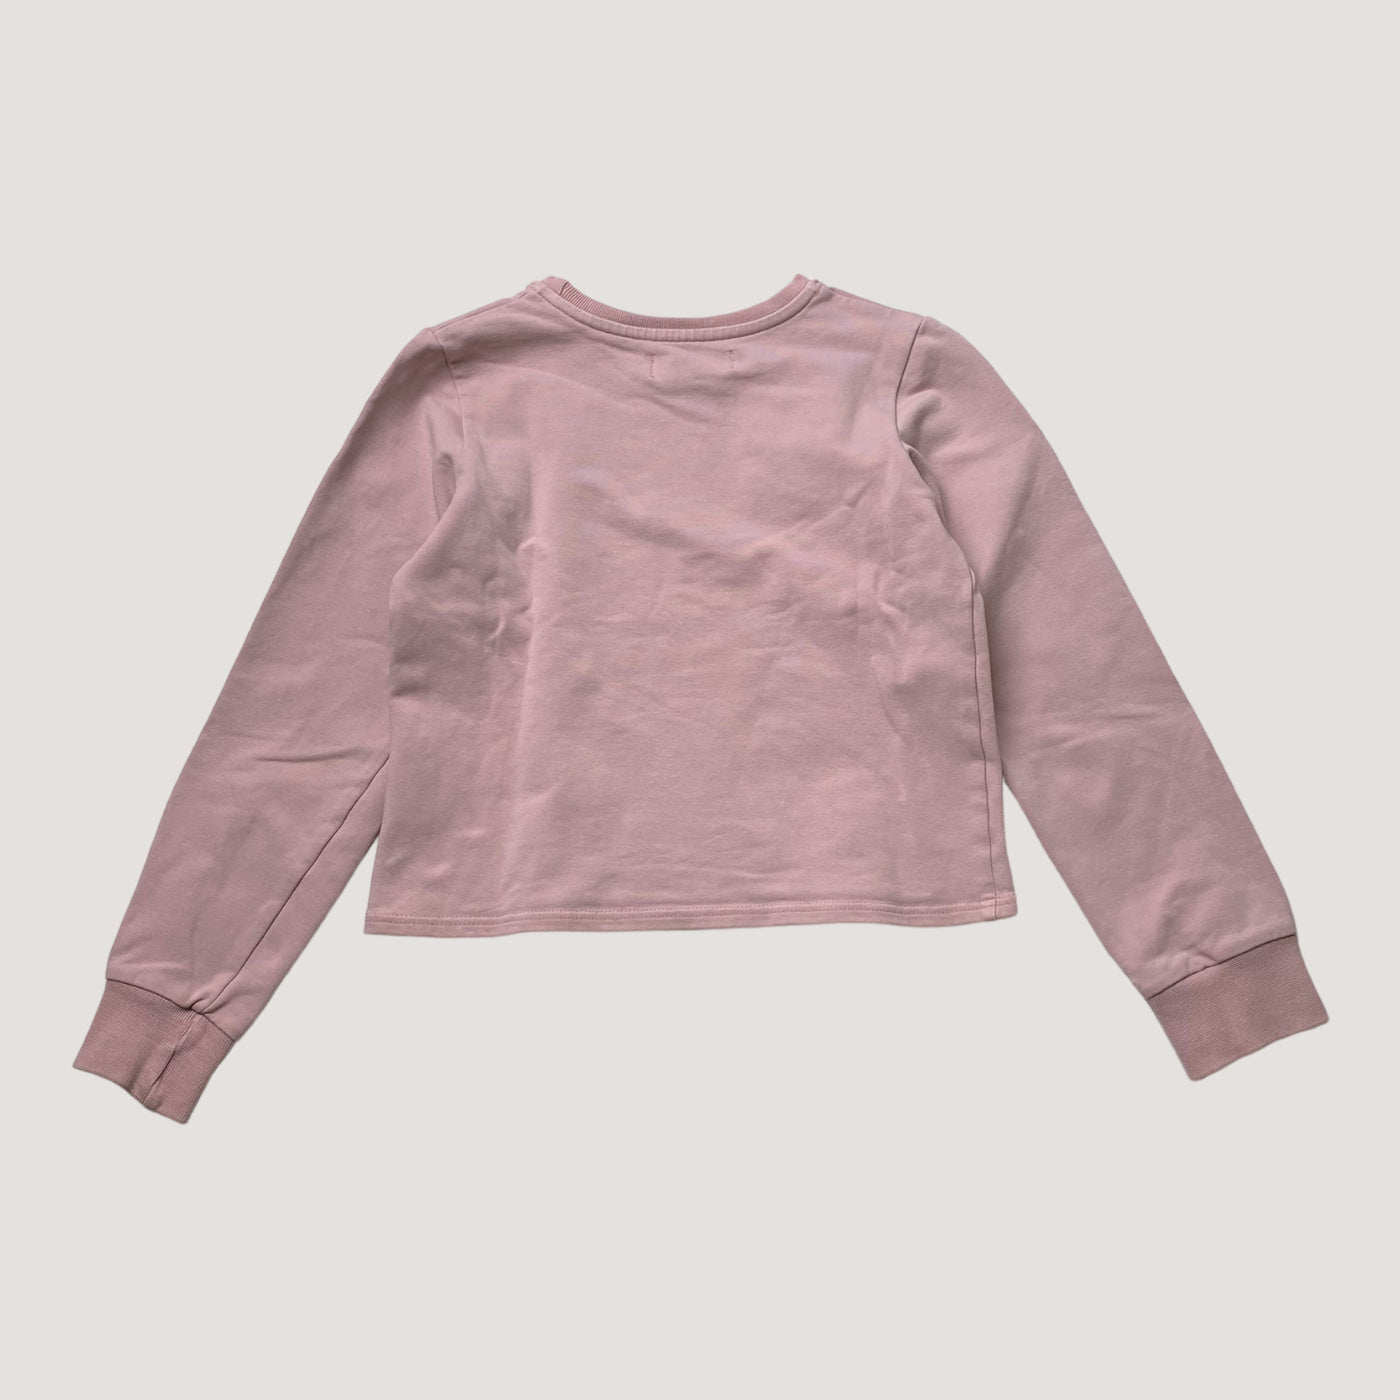 Gugguu sweatshirt, pink | 146cm